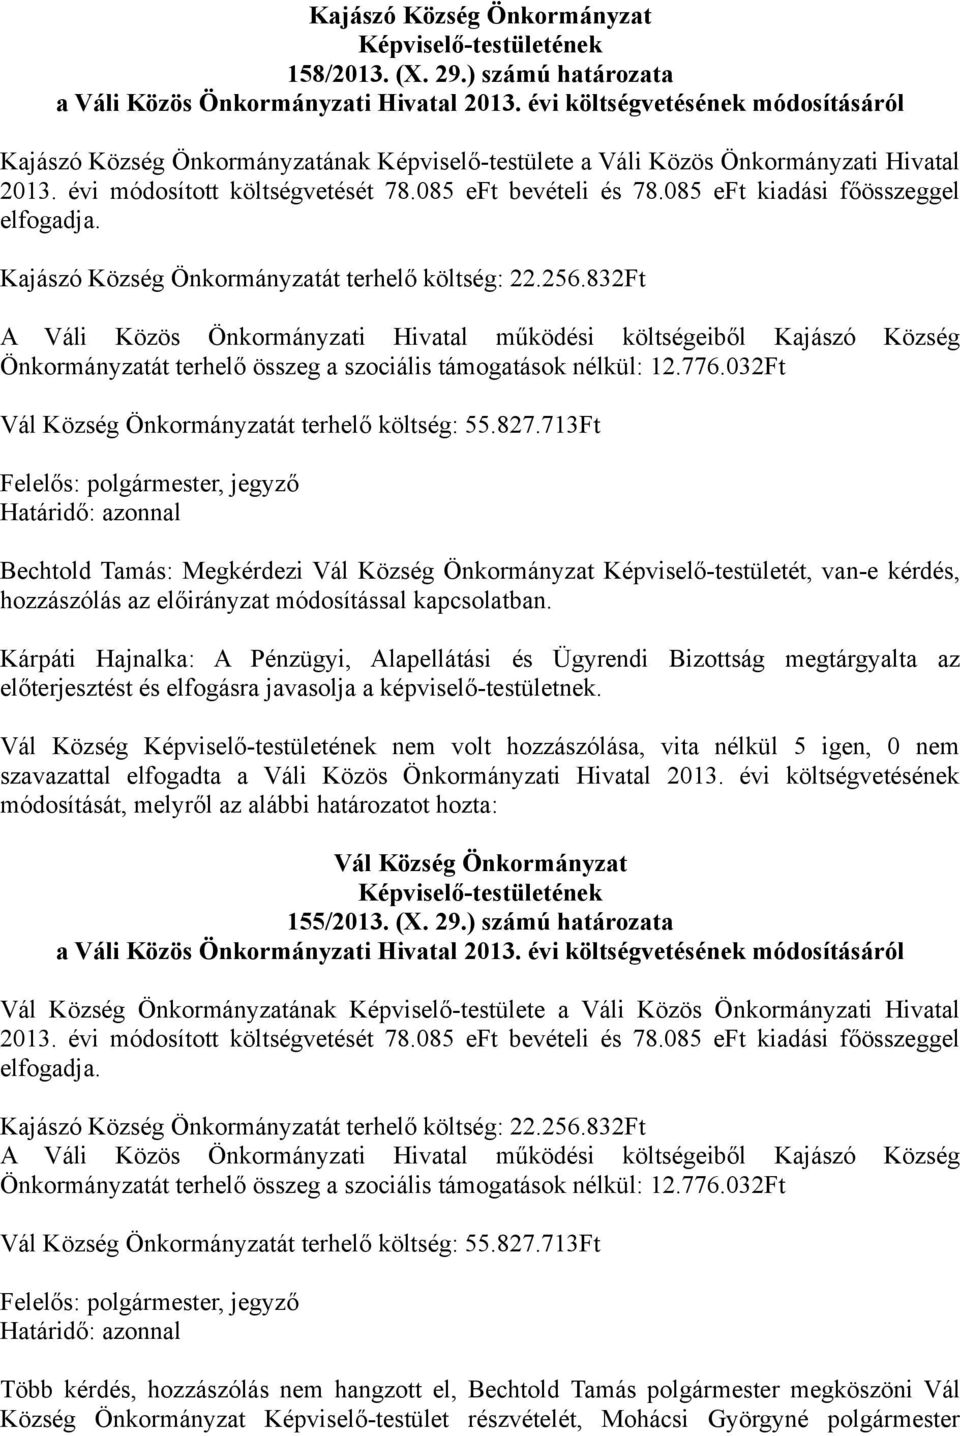 085 eft kiadási főösszeggel elfogadja. Kajászó Község Önkormányzatát terhelő költség: 22.256.